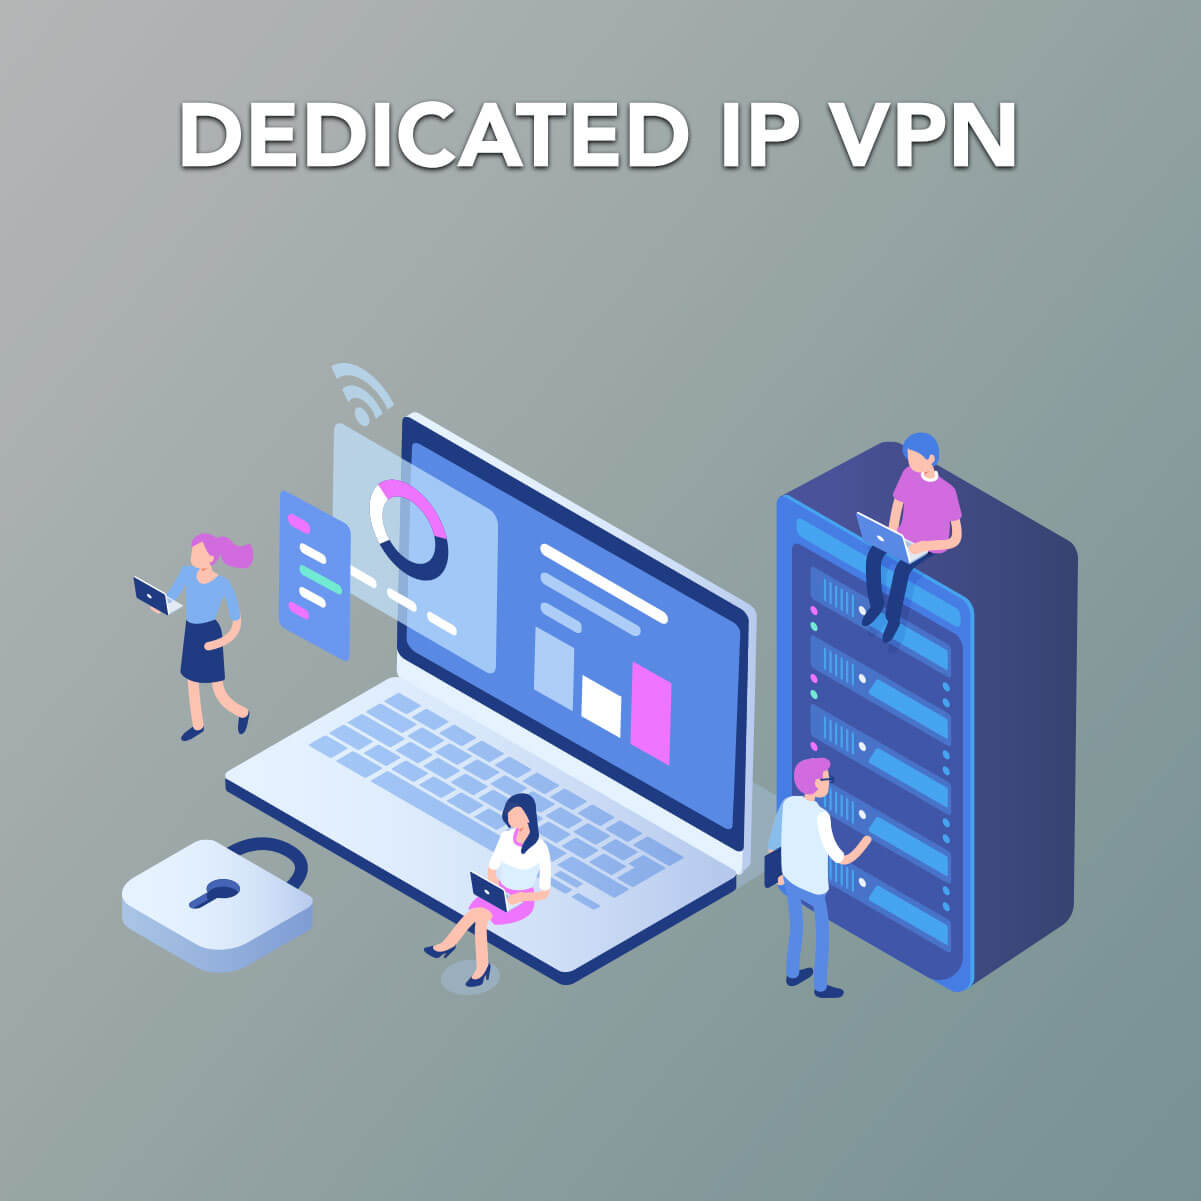 shared or dedicated ip vpn server